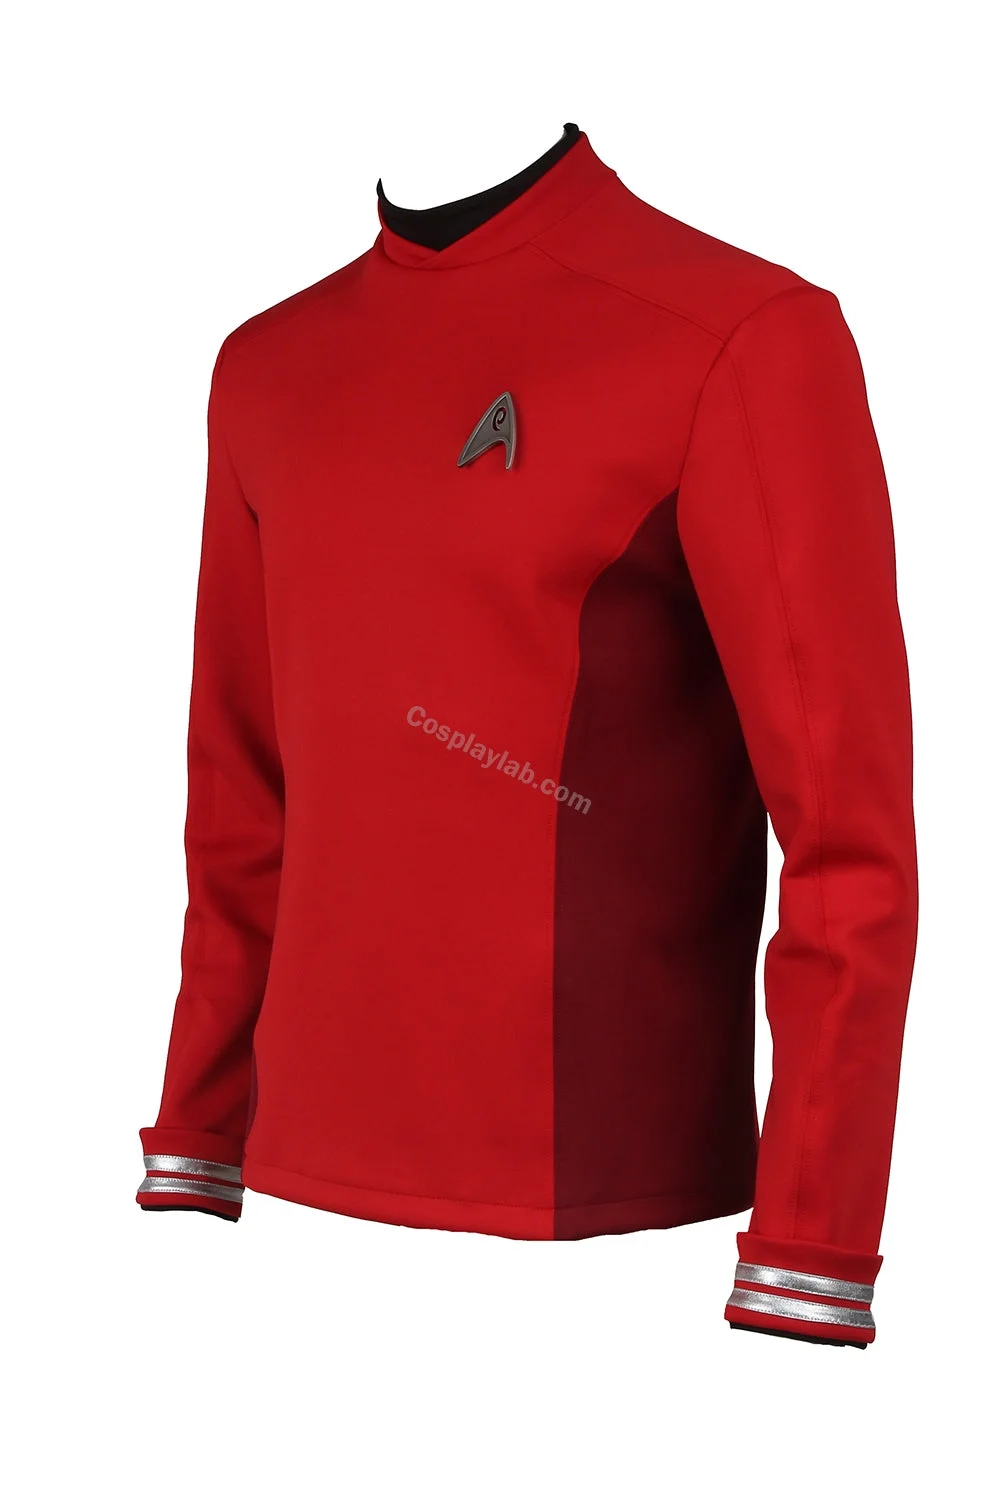 Leonard McCoy Bones cosplay jacket Star Trek Beyond costumes hoodie Sweat Shirts